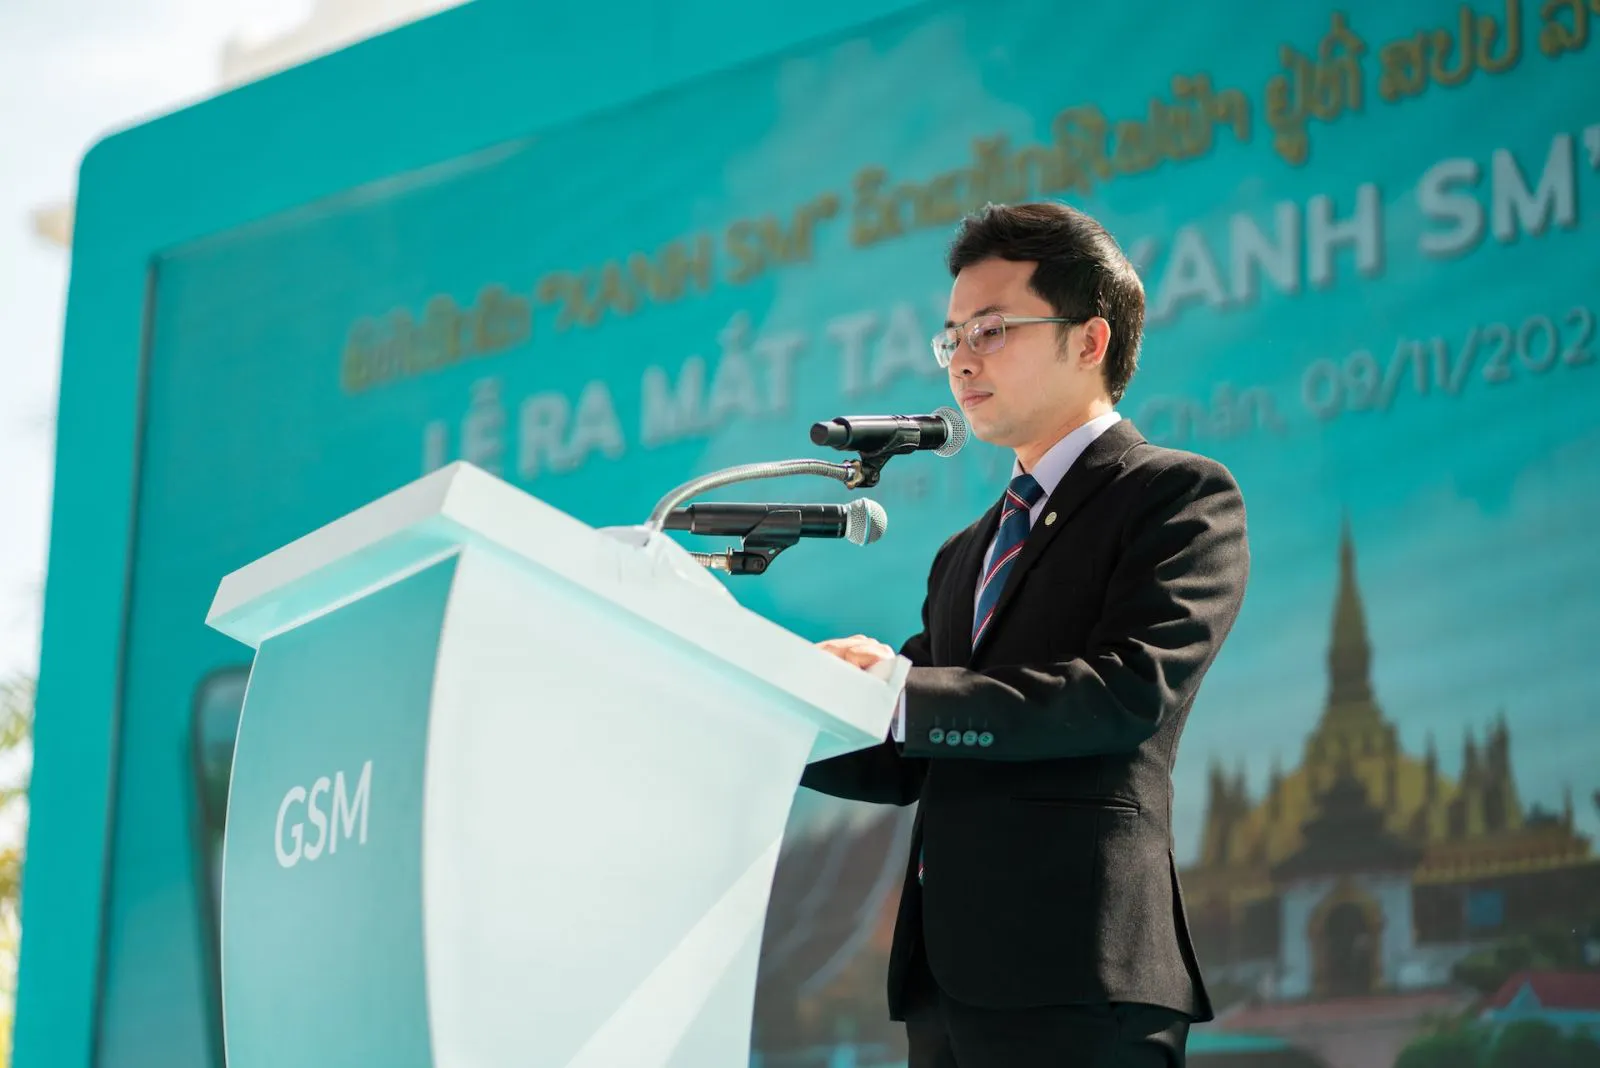 Ông Nguyễn Văn Thanh – Tổng Giám đốc công ty GSM toàn cầu phát biểu tại sự kiện ra mắt taxi “Xanh SM” tại Lào hôm 9/11.